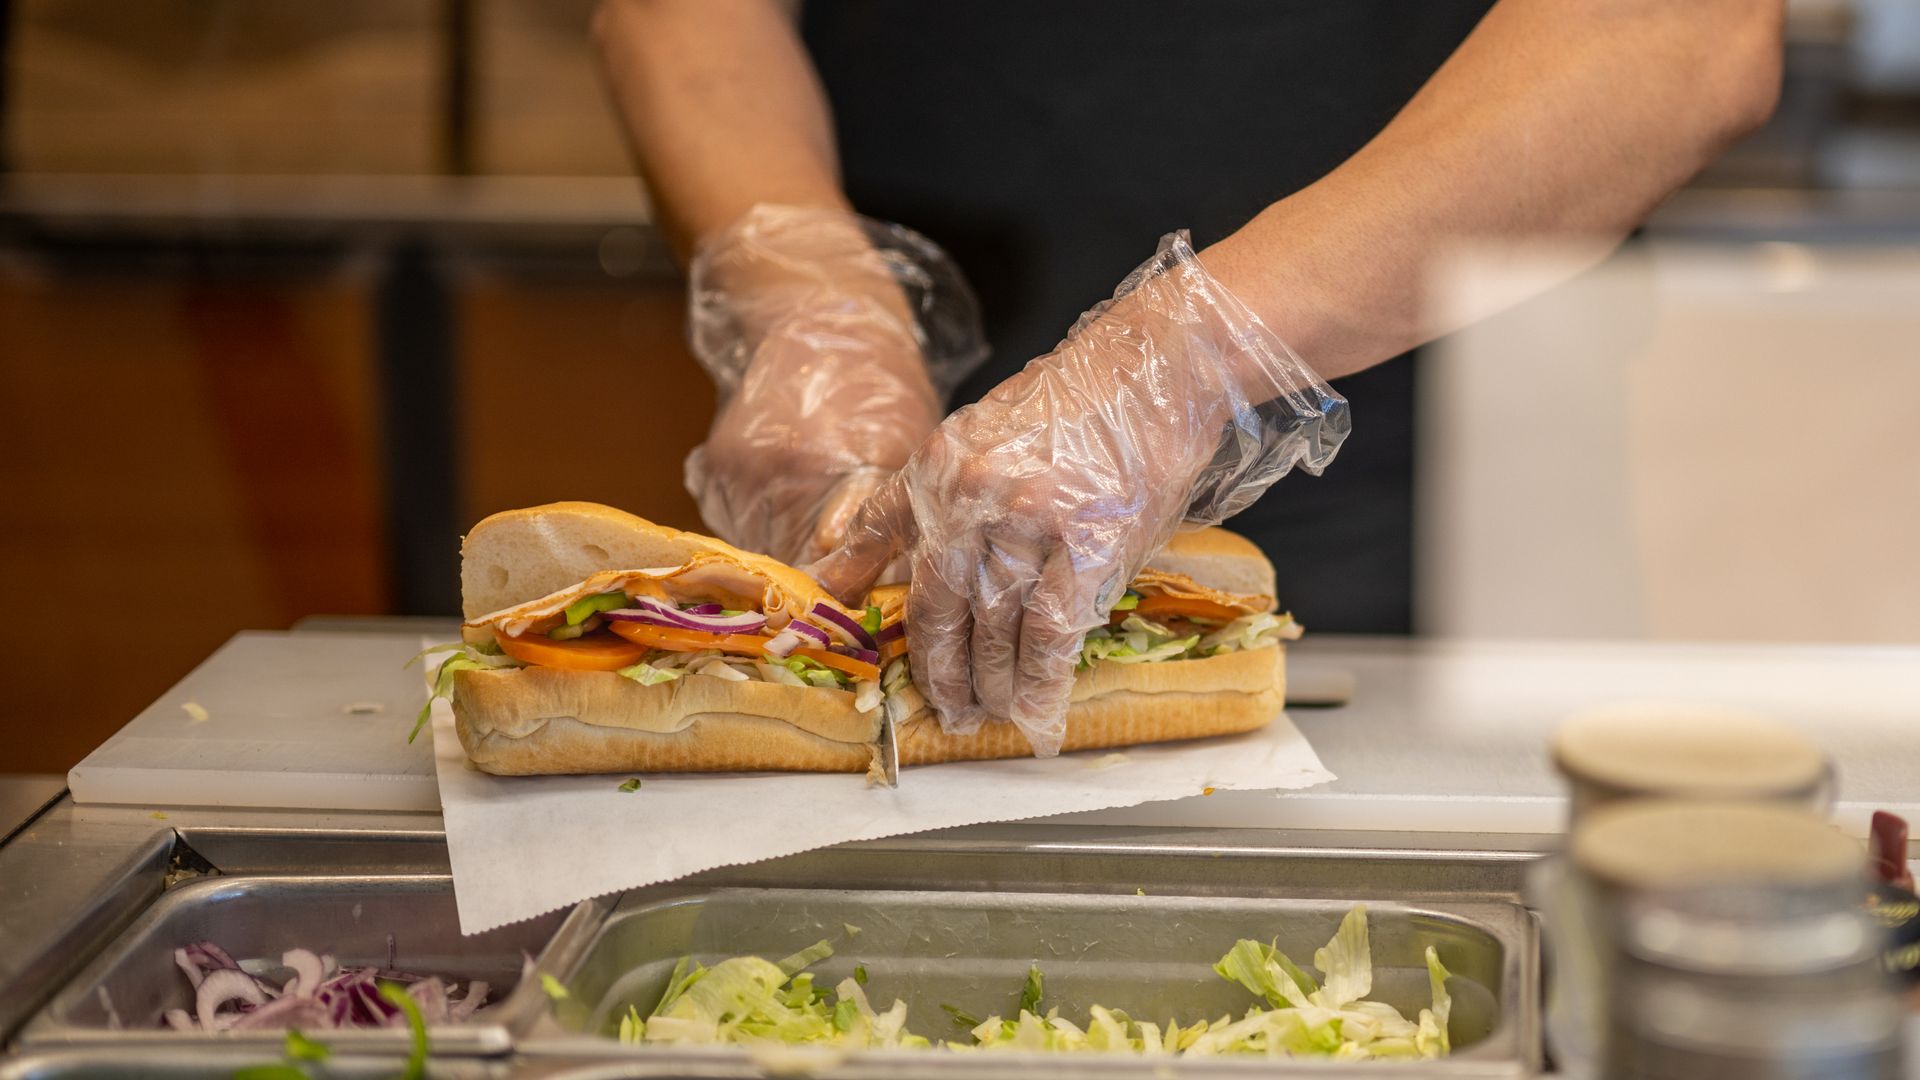 Footlong sandwich being cut in half